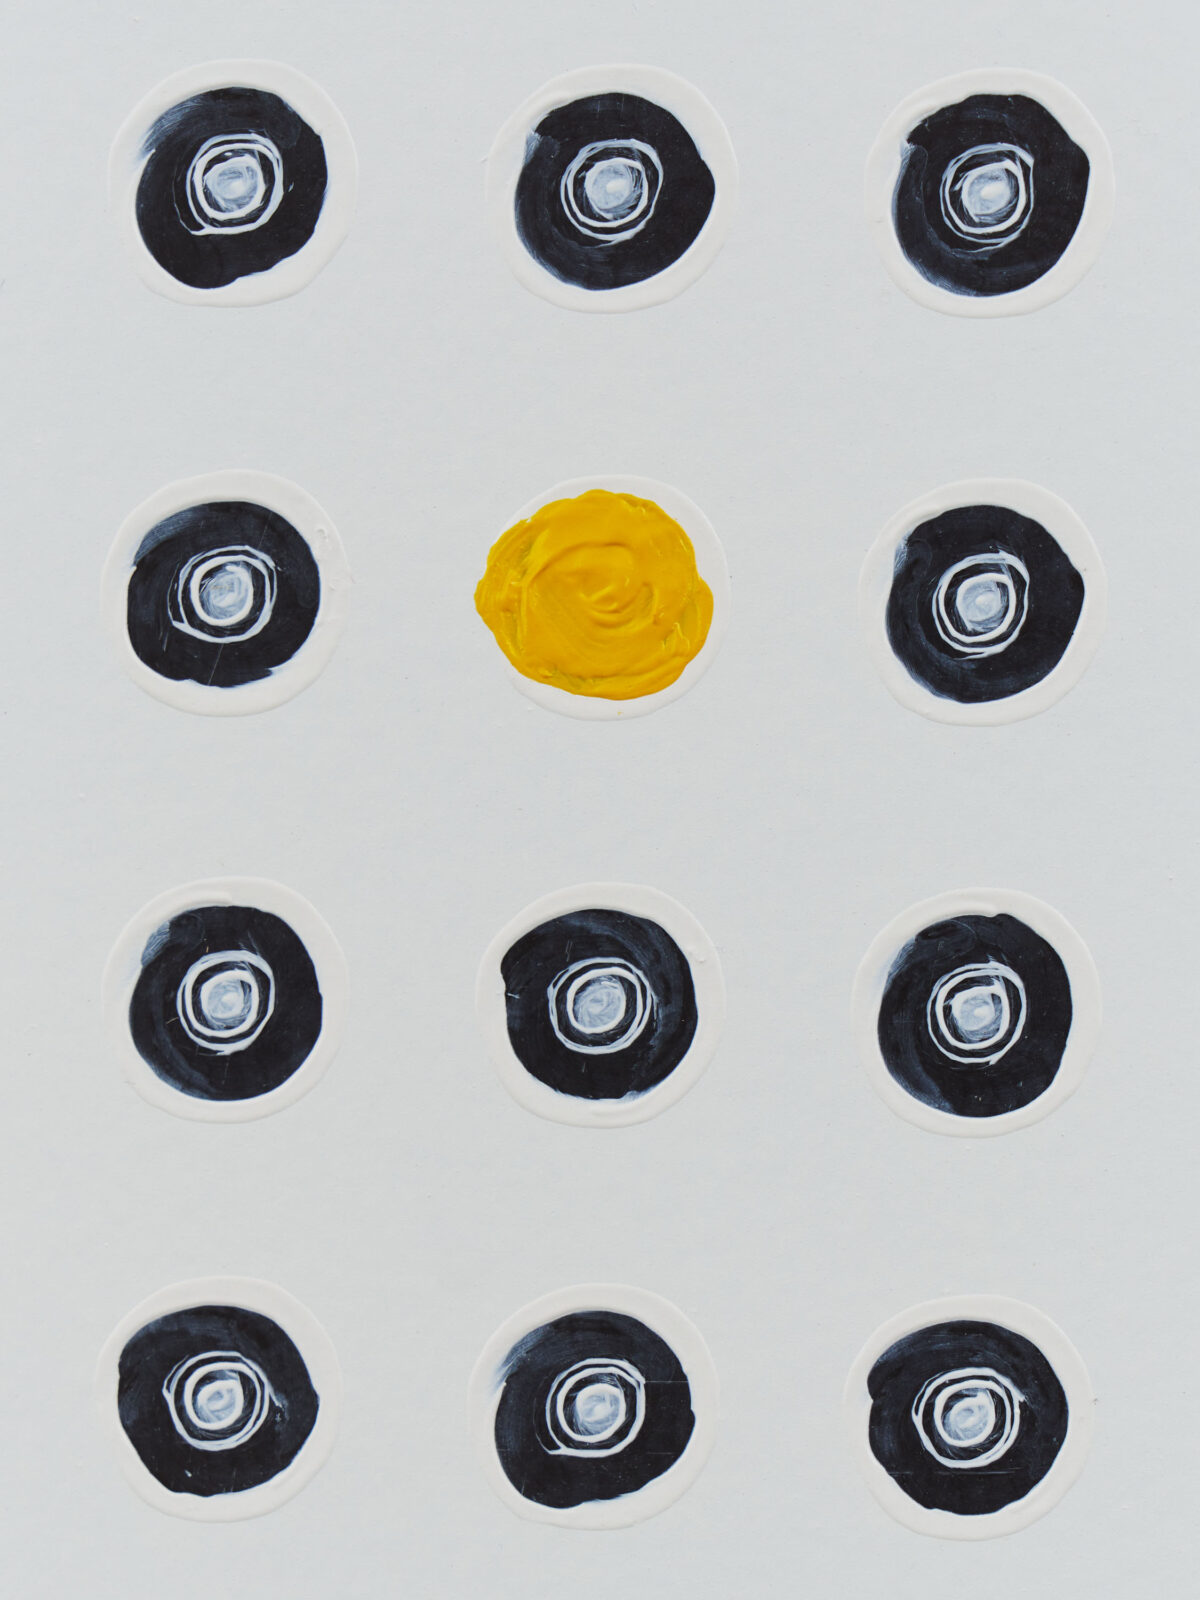 círculos negros repetidos con un círculo amarillo